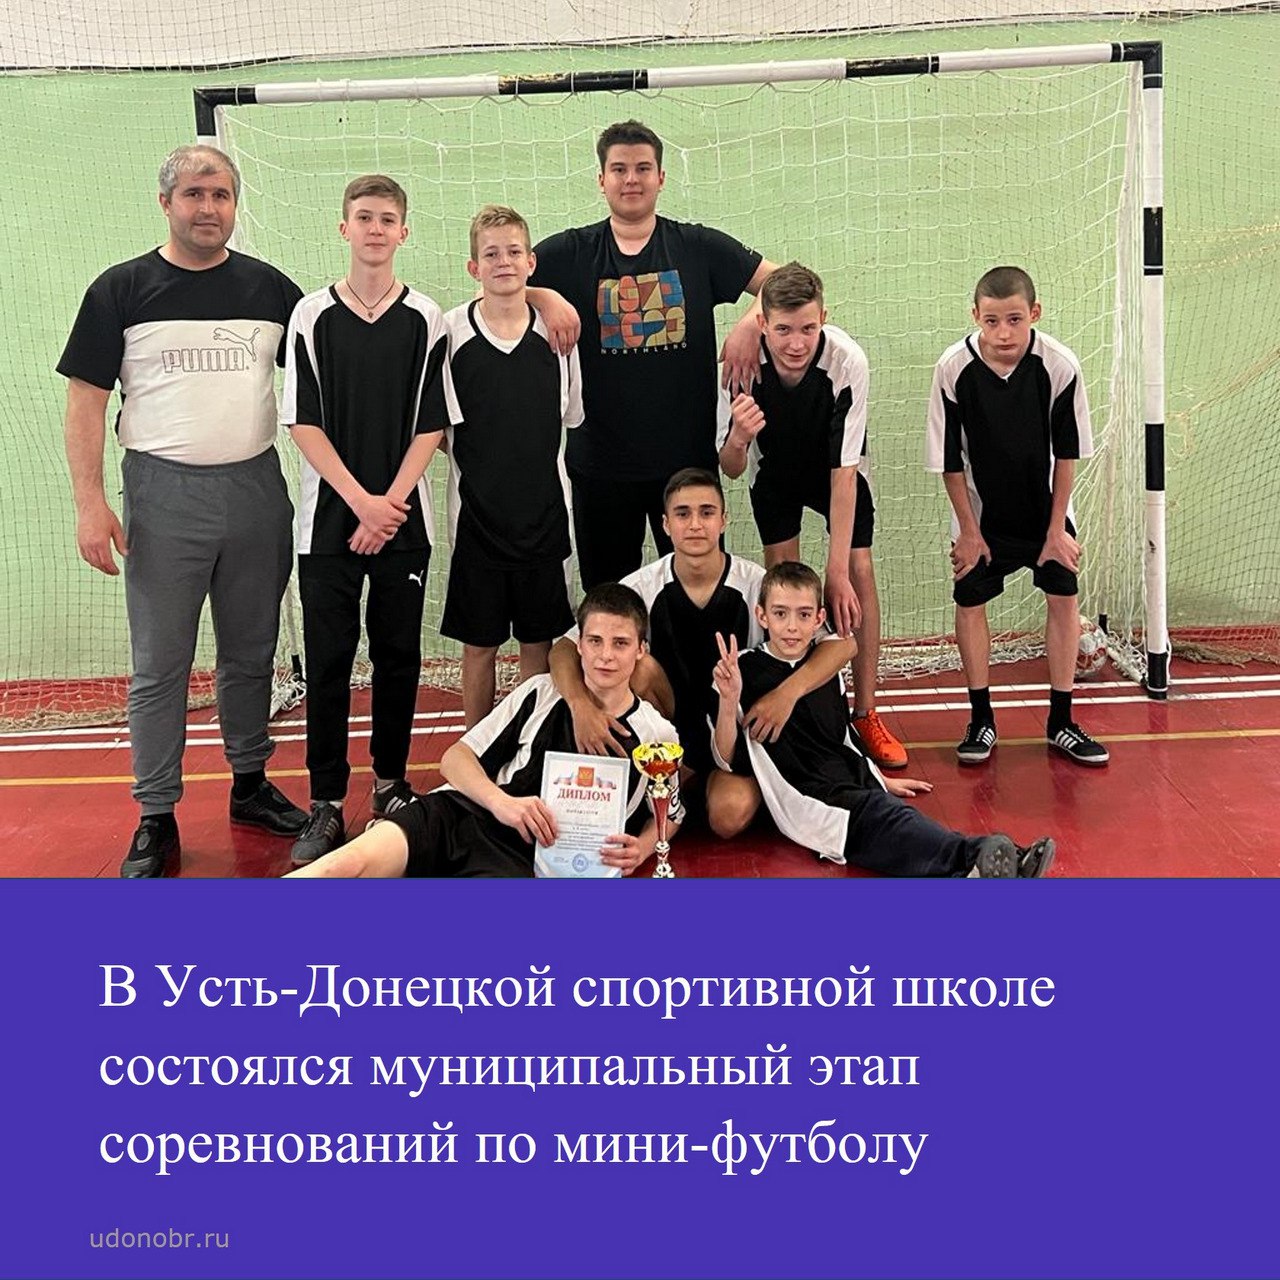 В Усть-Донецкой спортивной школе состоялся муниципальный этап соревнований по мини-футболу